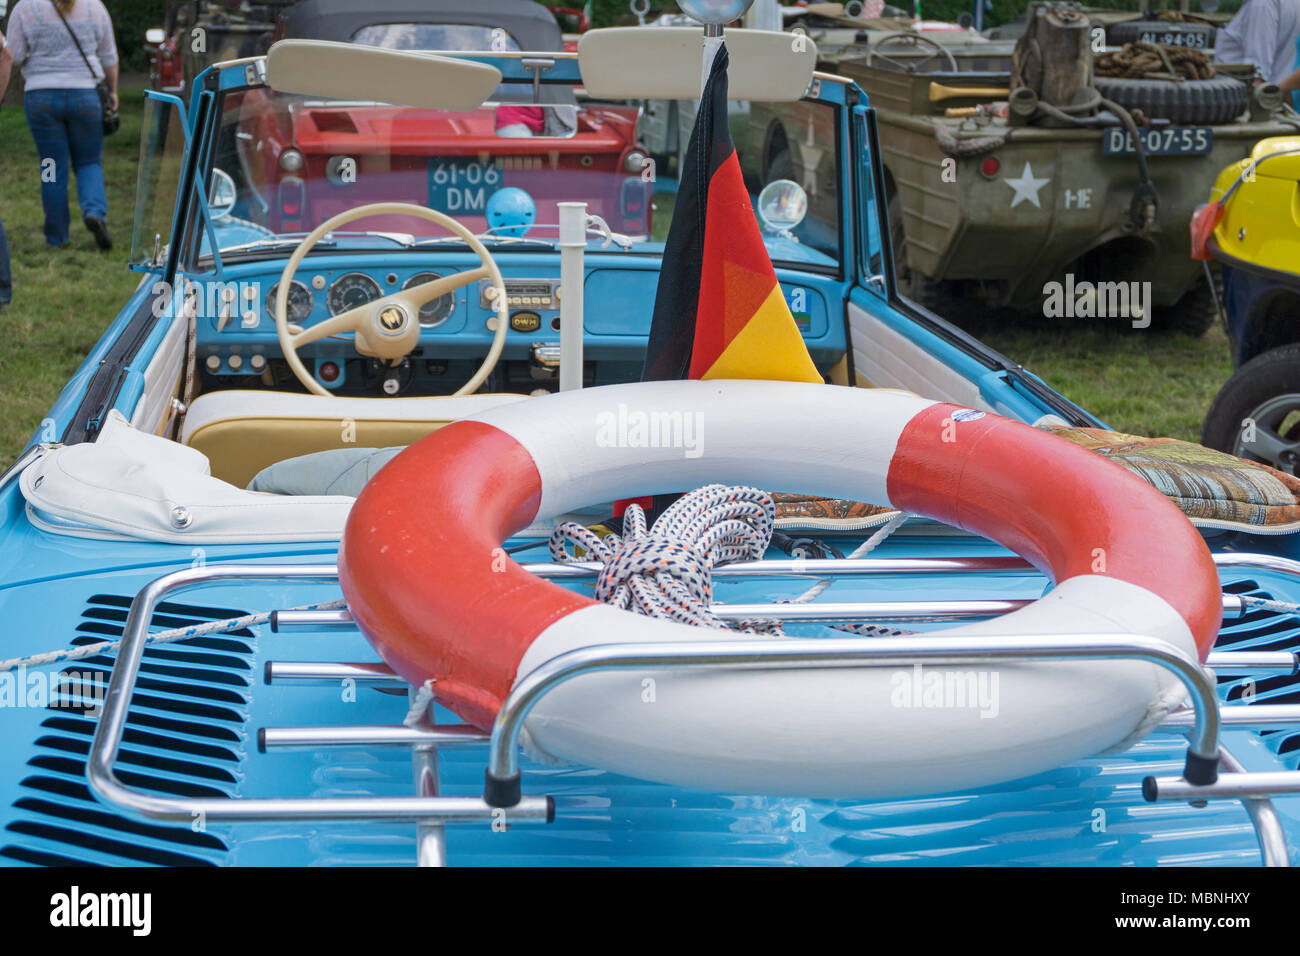 Amphicar, vehículo anfibio exposición en el río Mosela, Neumagen-Dhron, Renania-Palatinado, Alemania Foto de stock